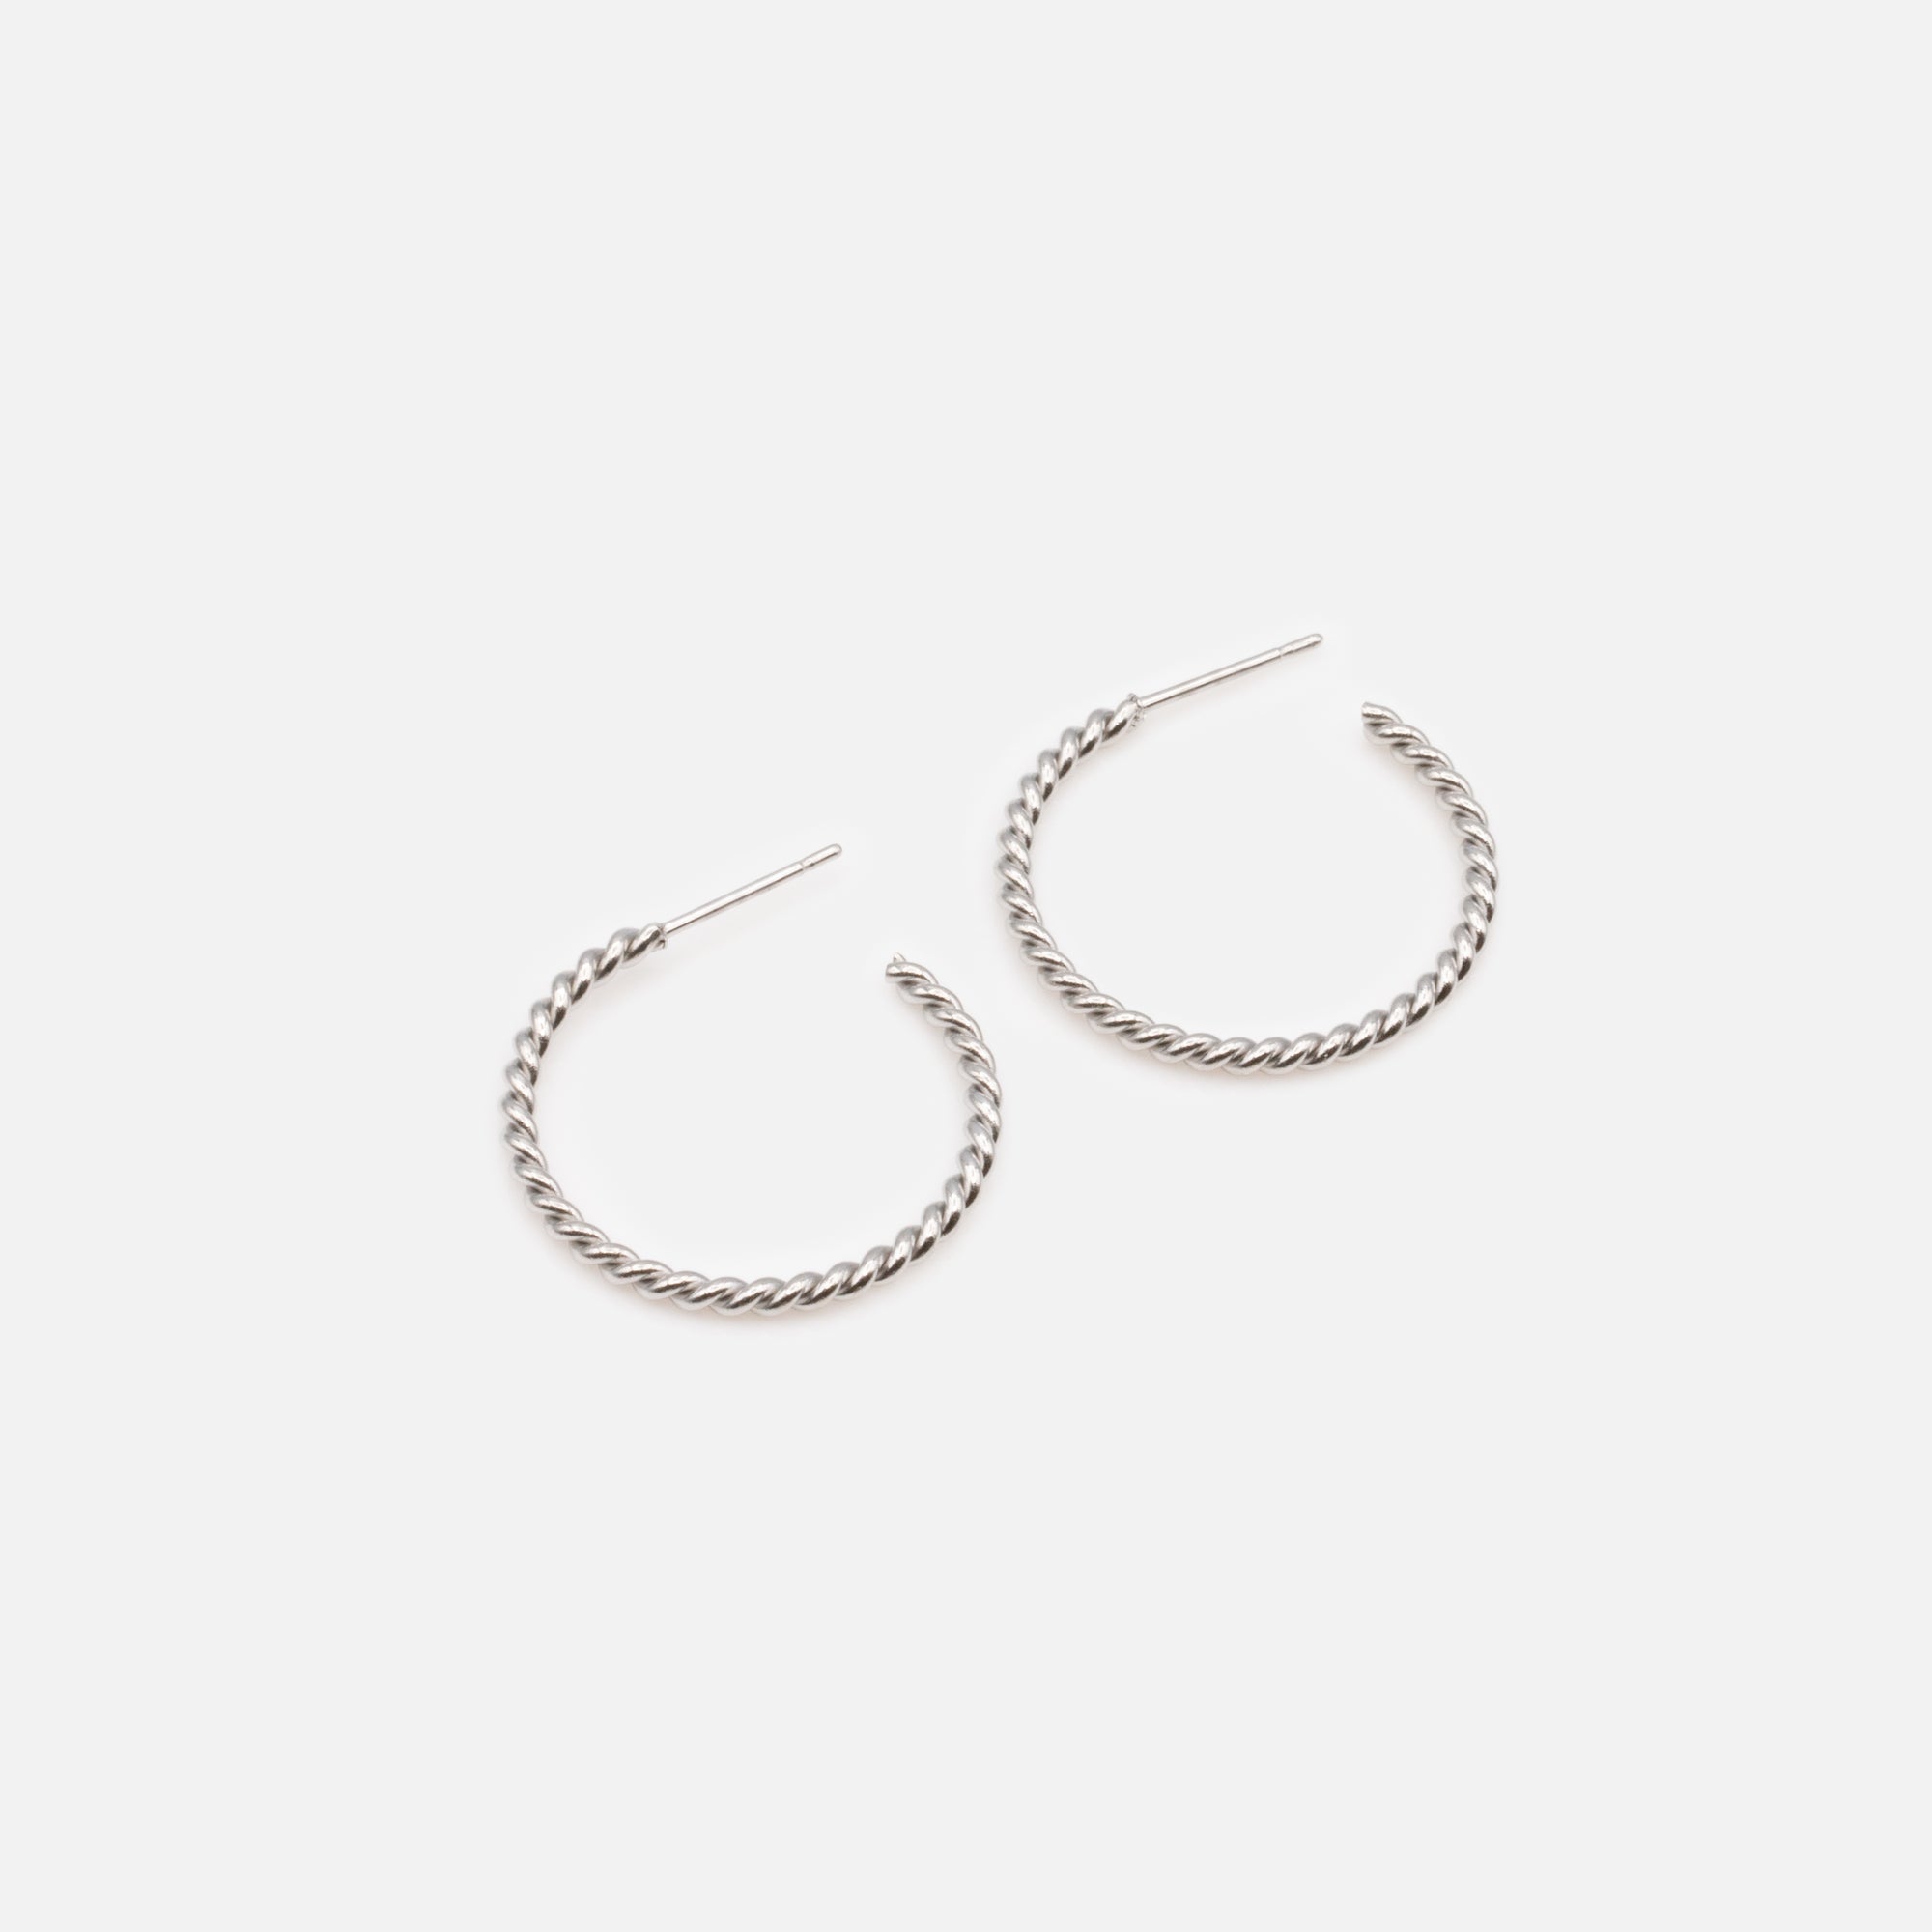 Fine silver twisted hoop earrings 25 mm in stainless steel